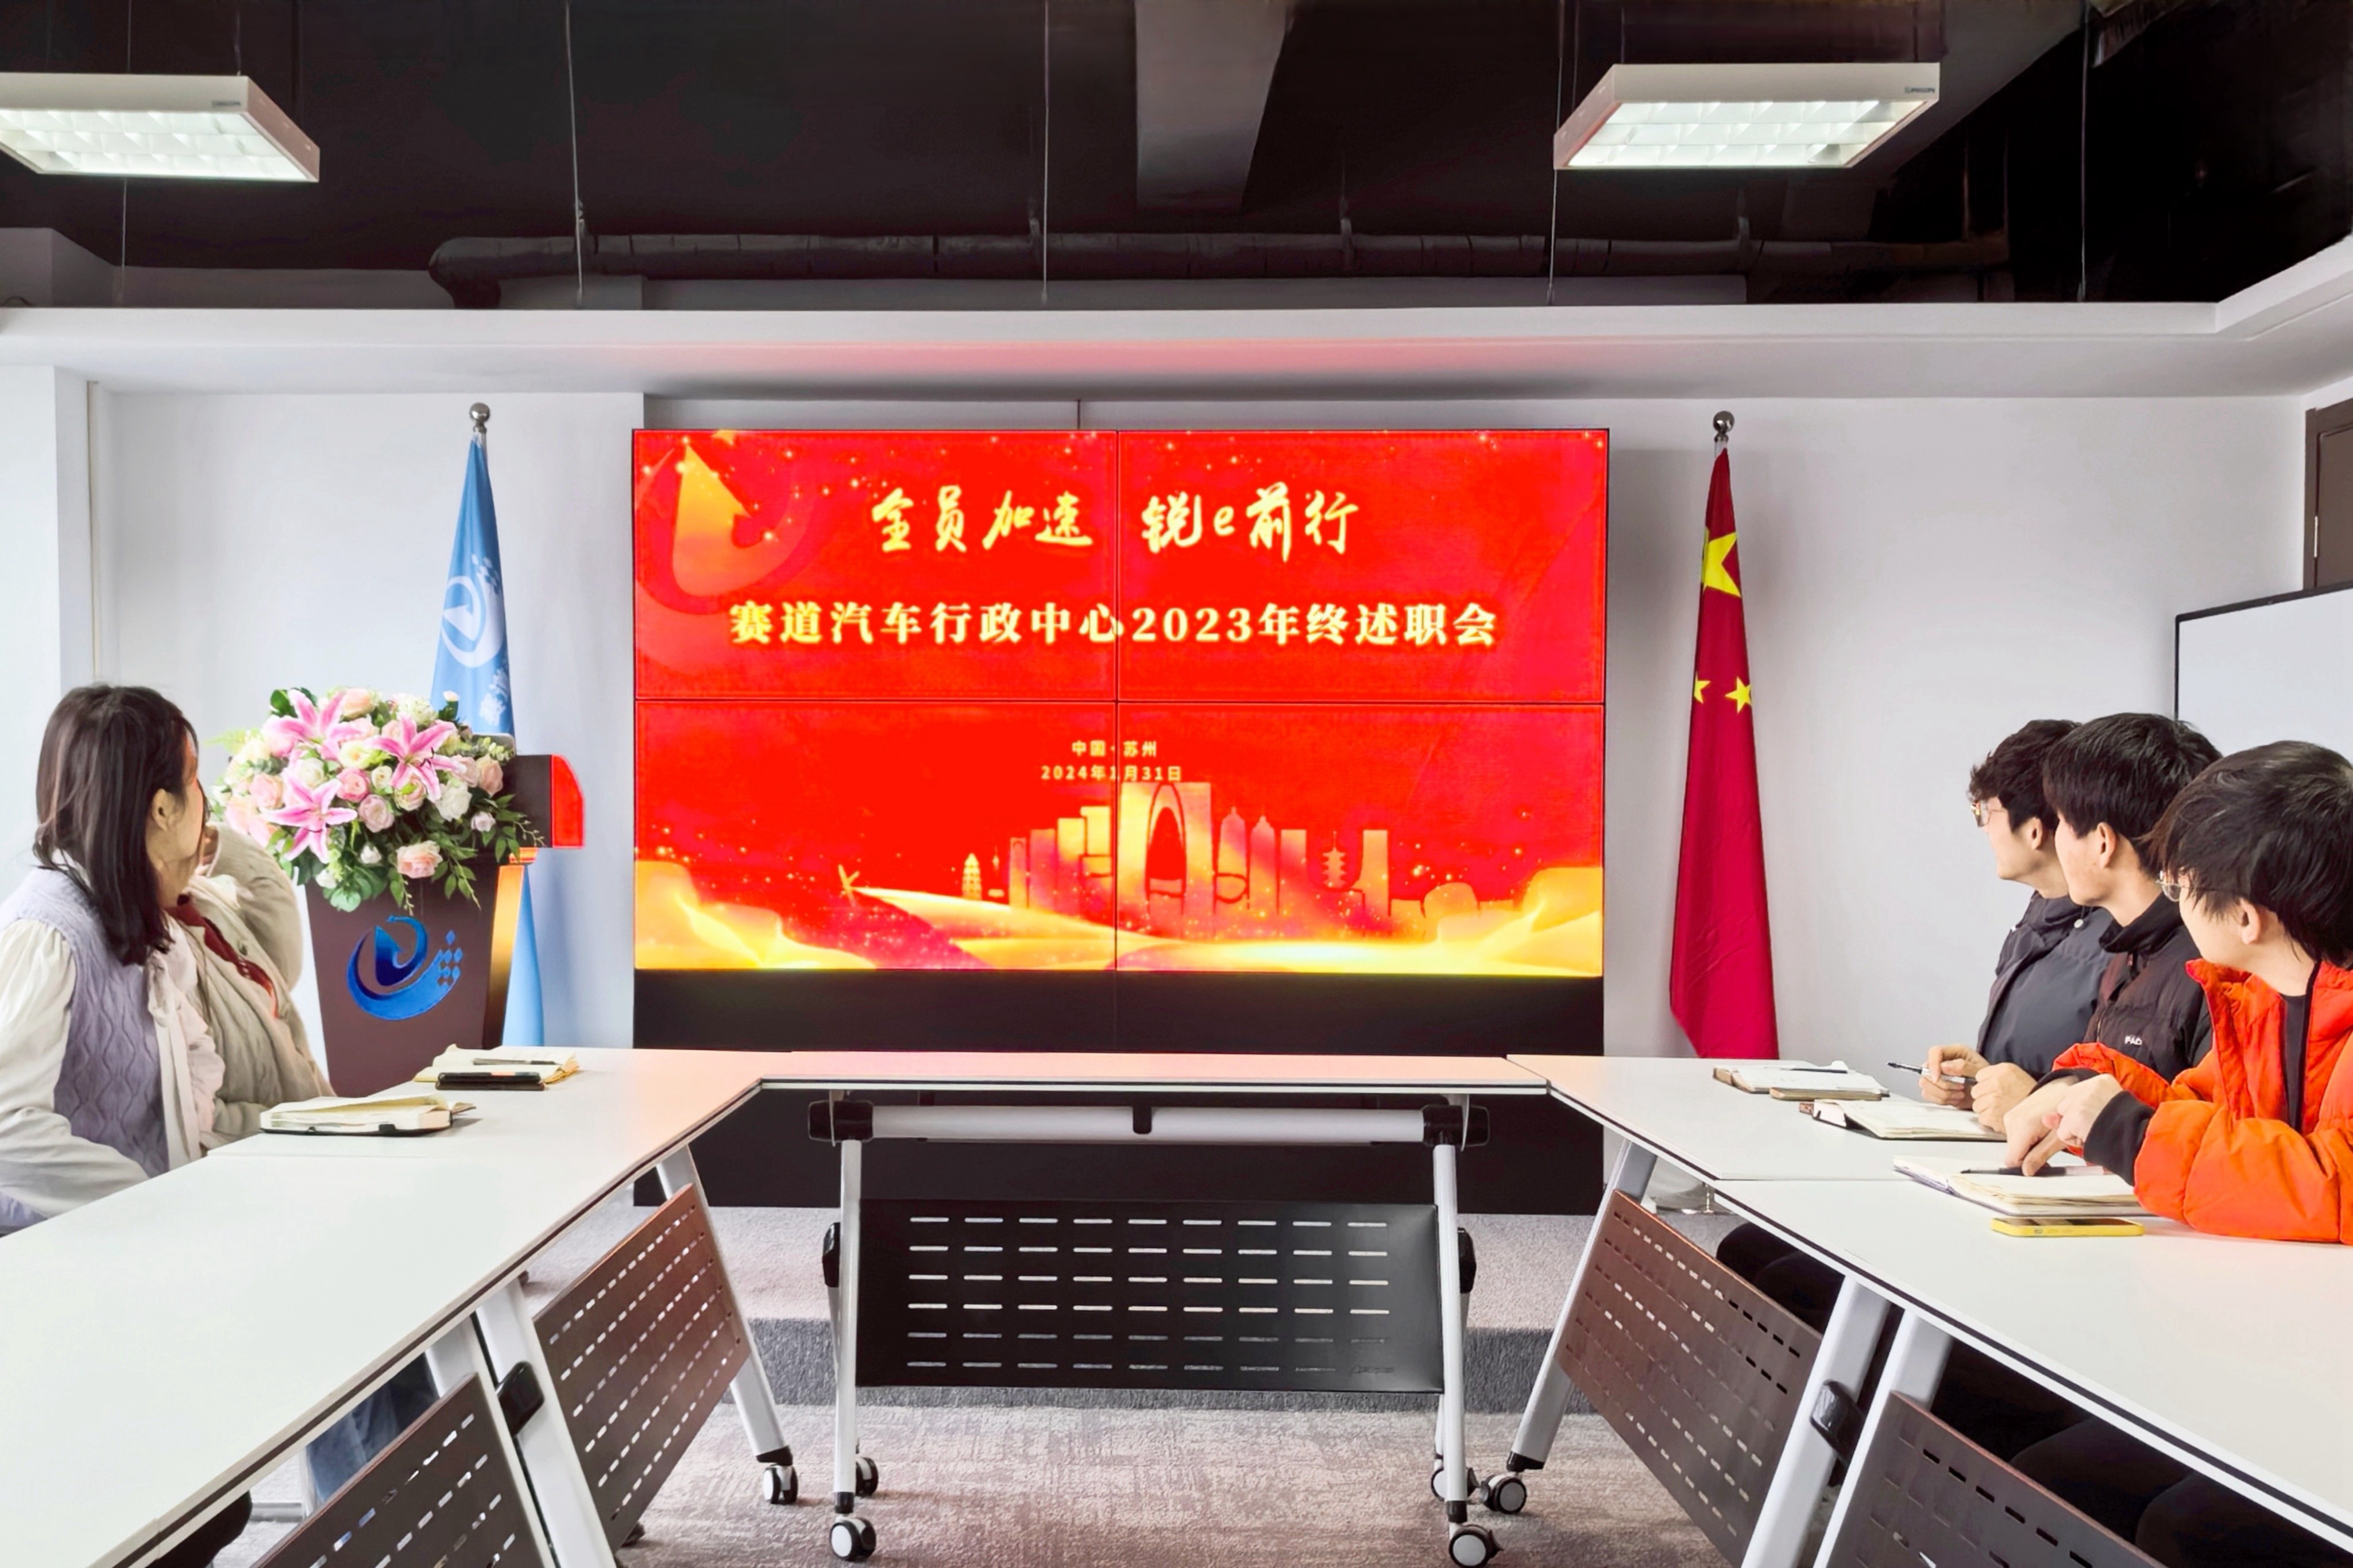 行政中心舉行2023年終述職會(huì)